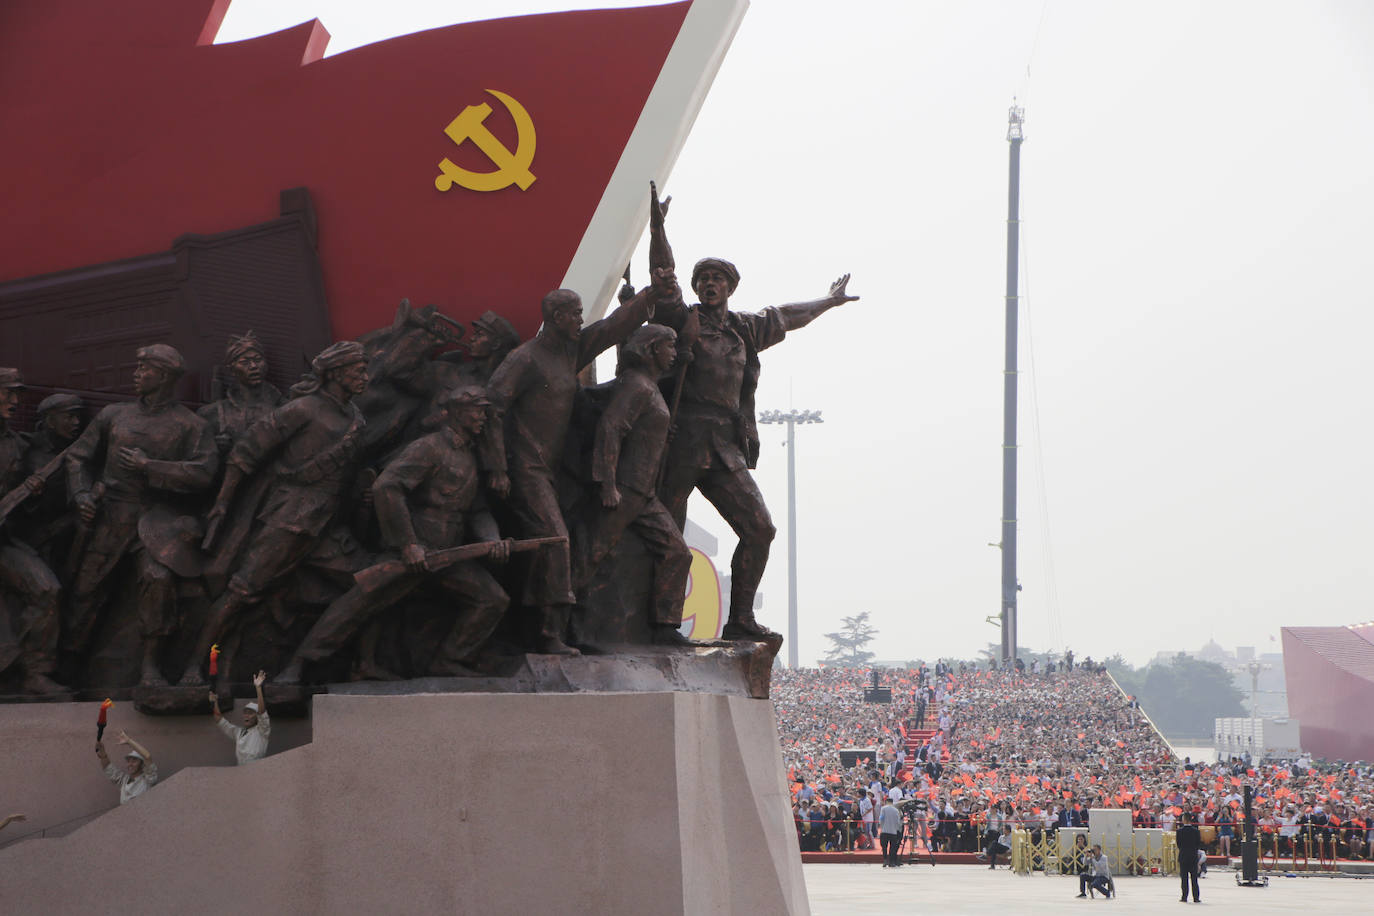 Hasta 15.000 soldados desfilaron frente a las autoridades por el centro de la emblemática plaza de Tiananmen para celebrar el 70 aniversario de la República Popular China